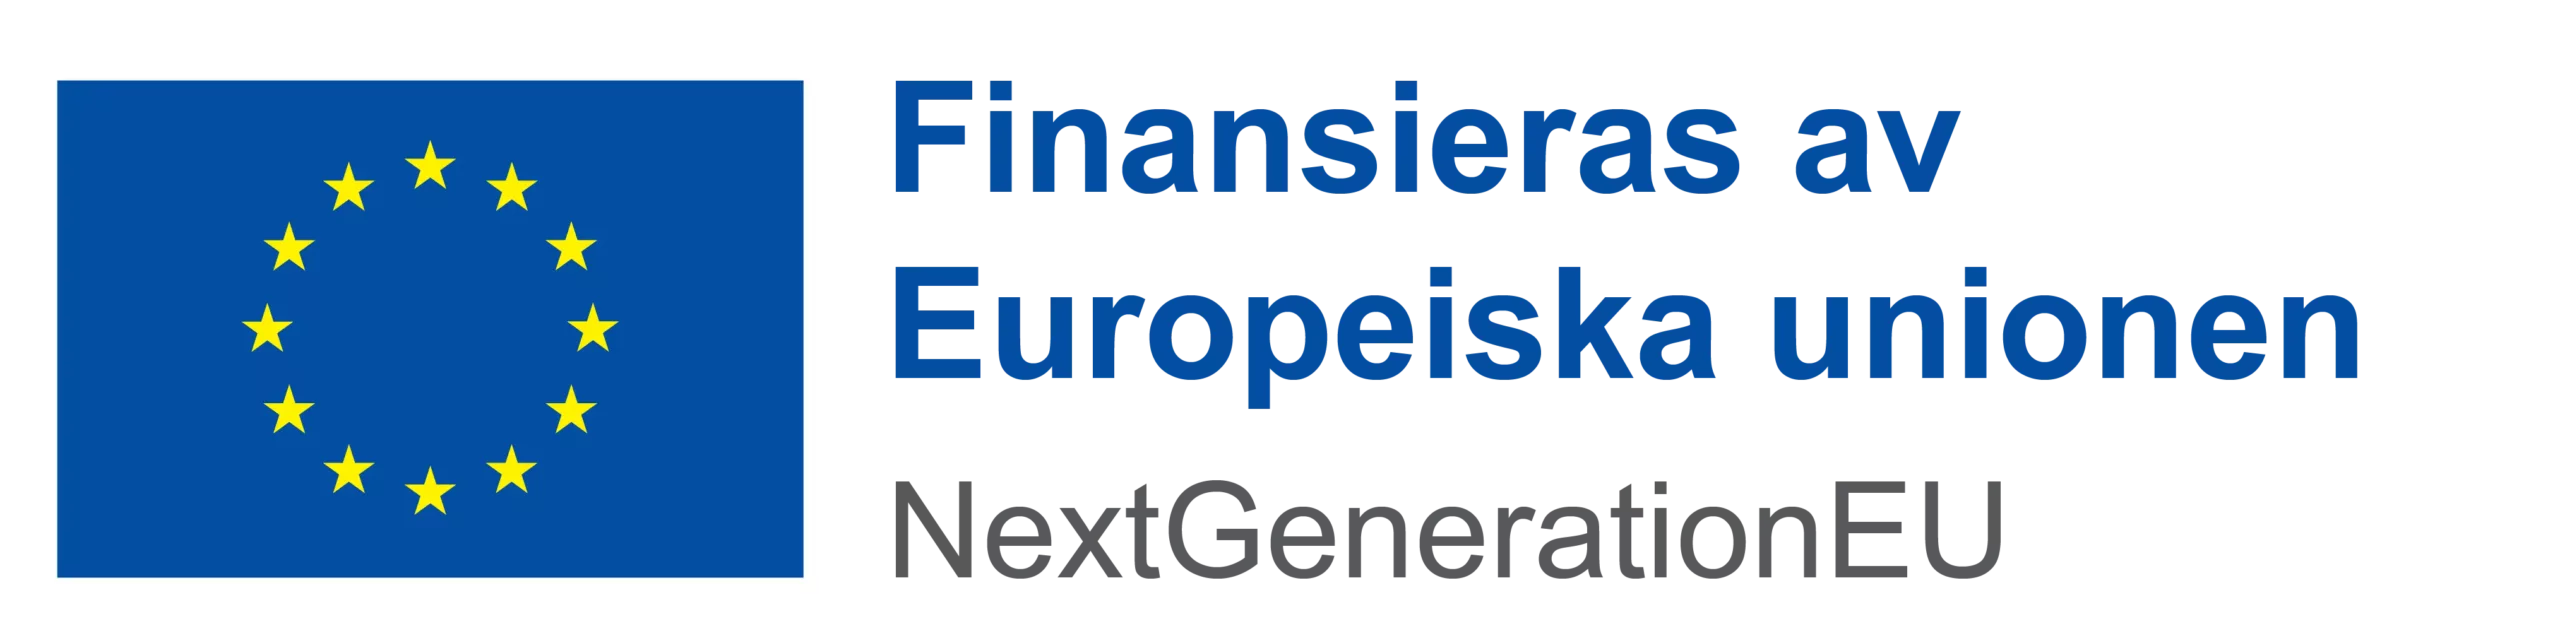 EU-flagga med texten finansieras av europeiska unionen NextGenerationEU